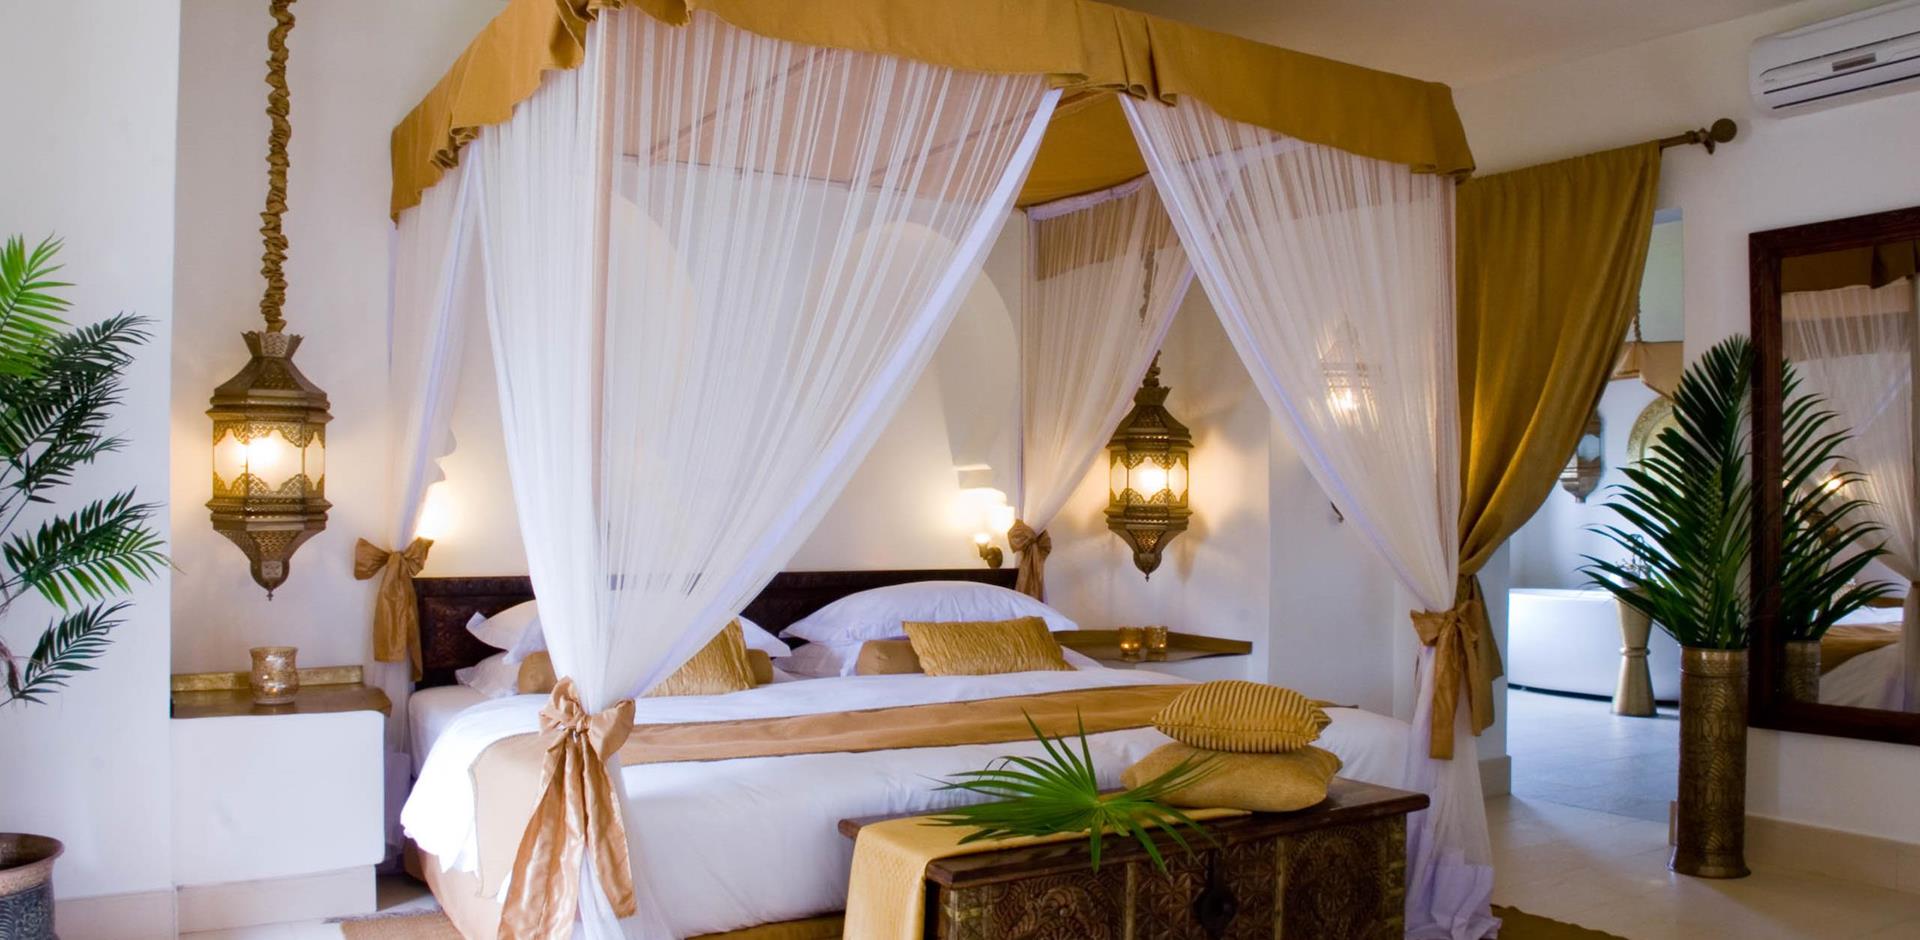 Bedroom, Baraza Resort & Spa, Tanzania, A&K